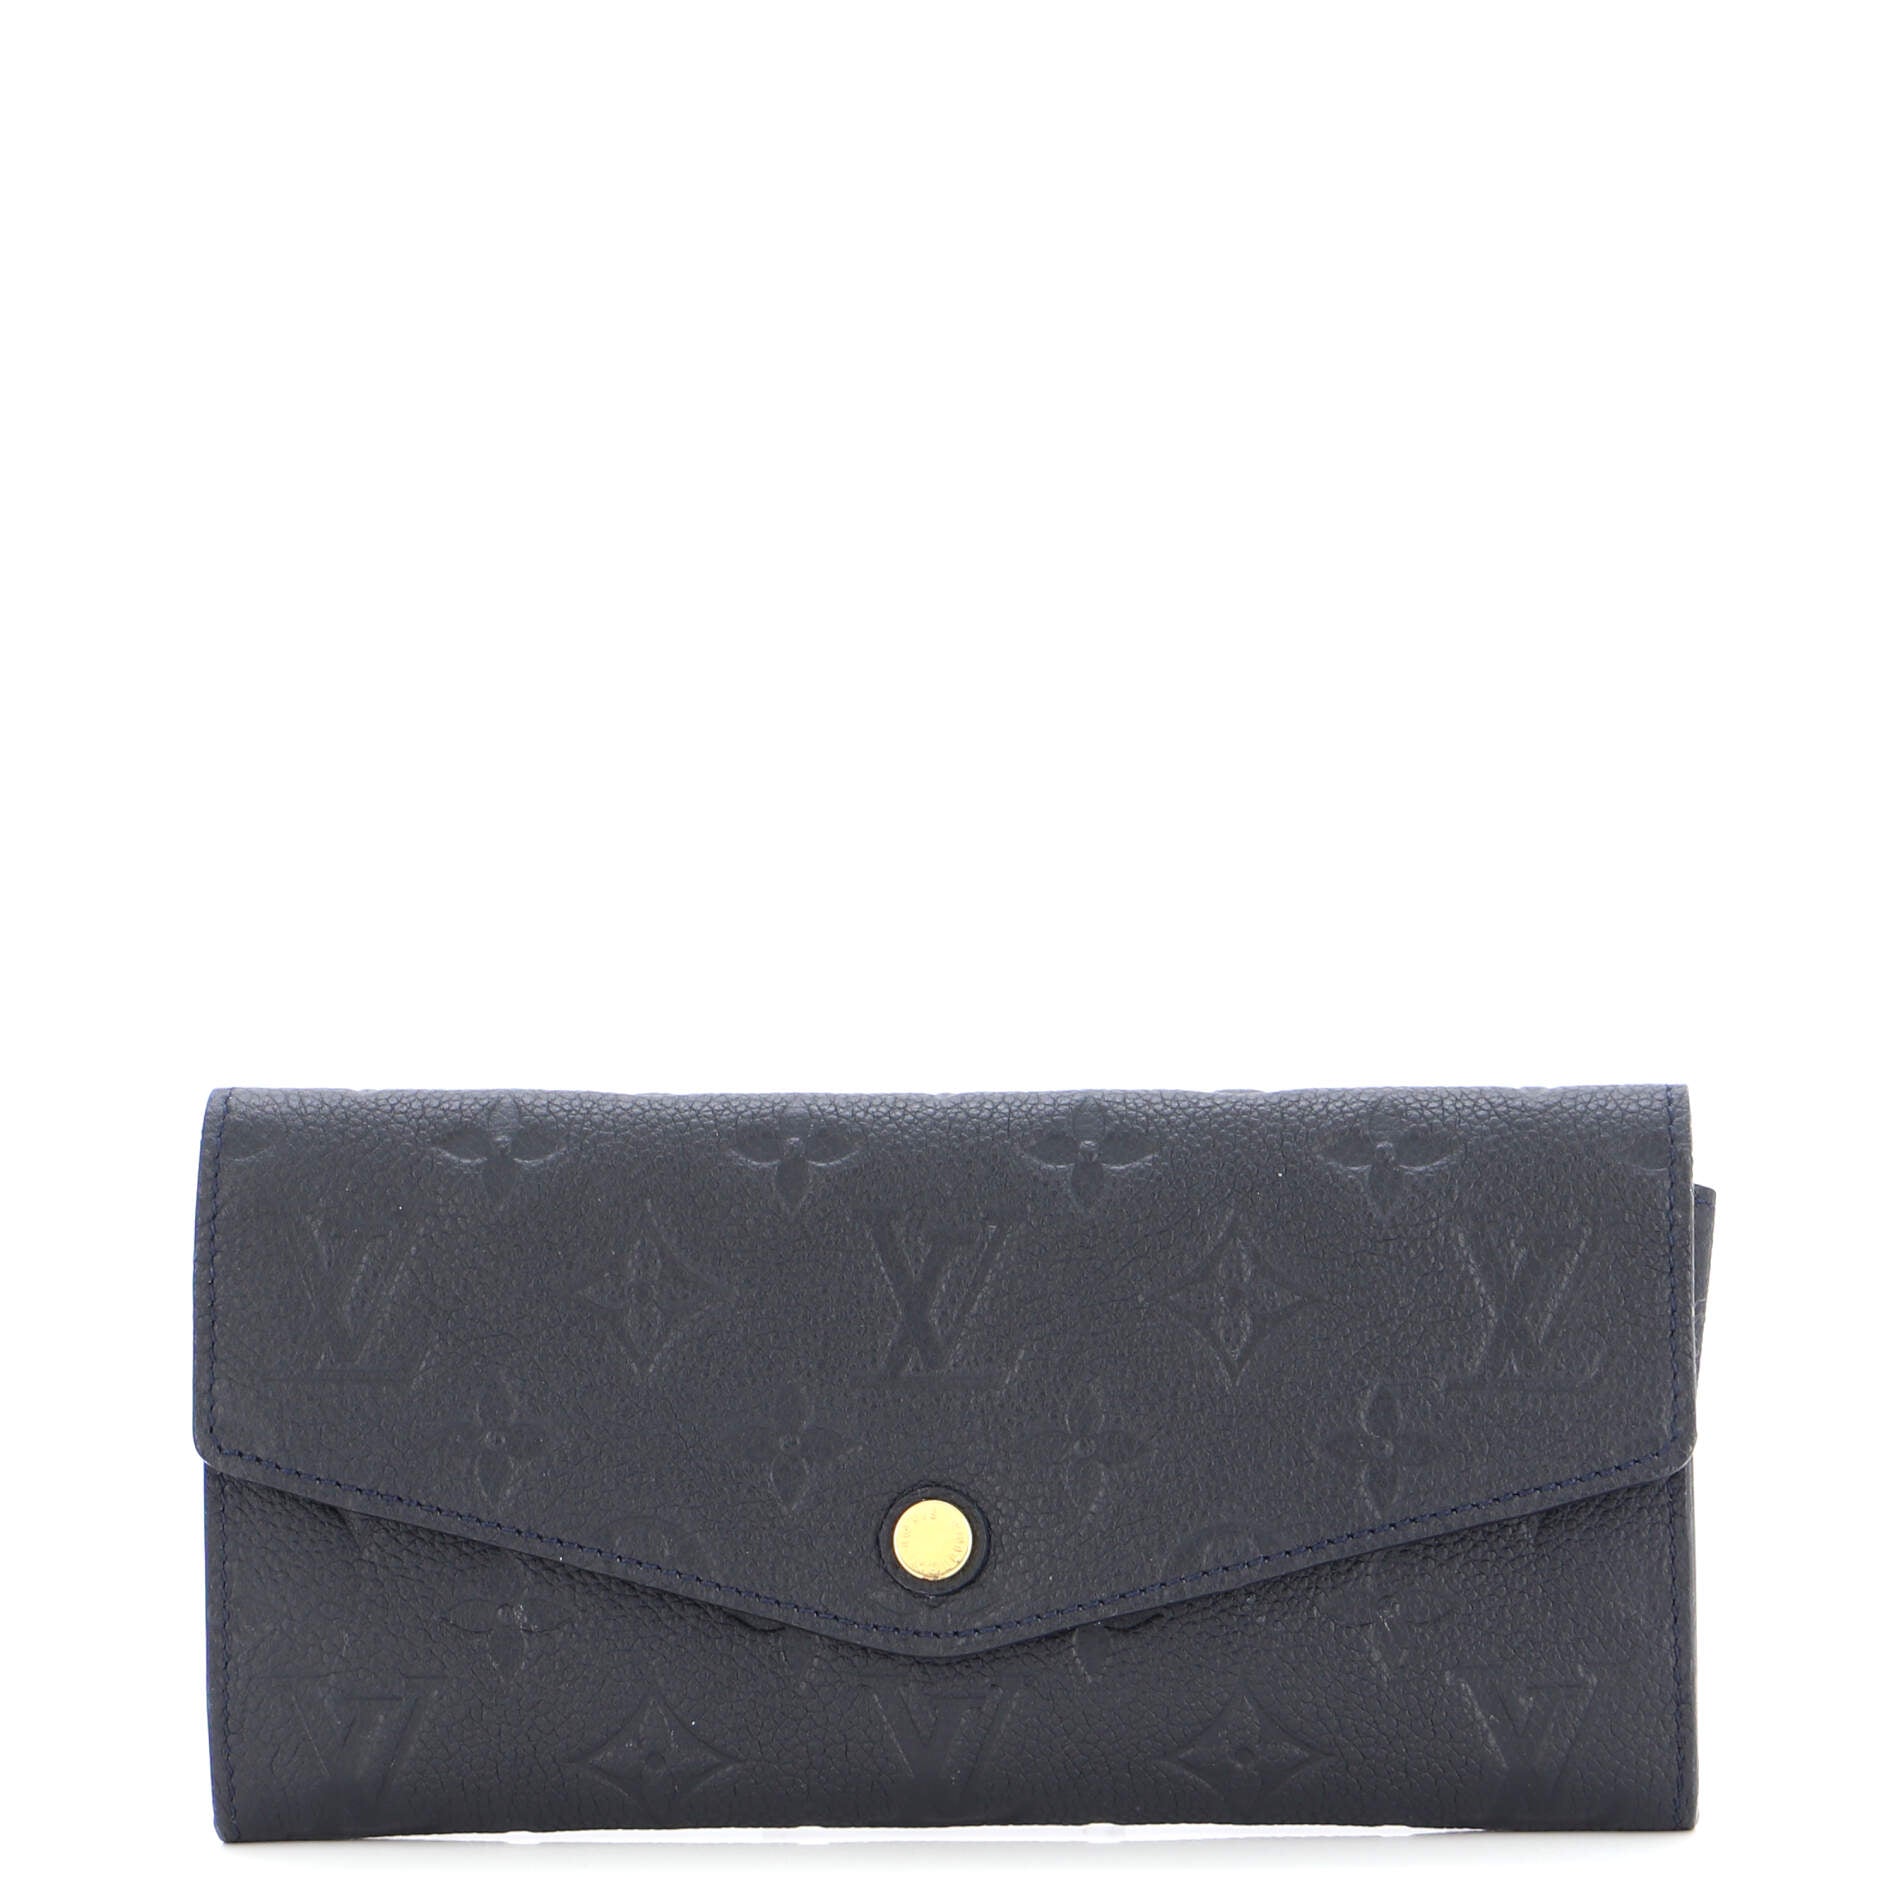 Louis Vuitton 2016 LV Monogram Curieuse Wallet - Black Wallets